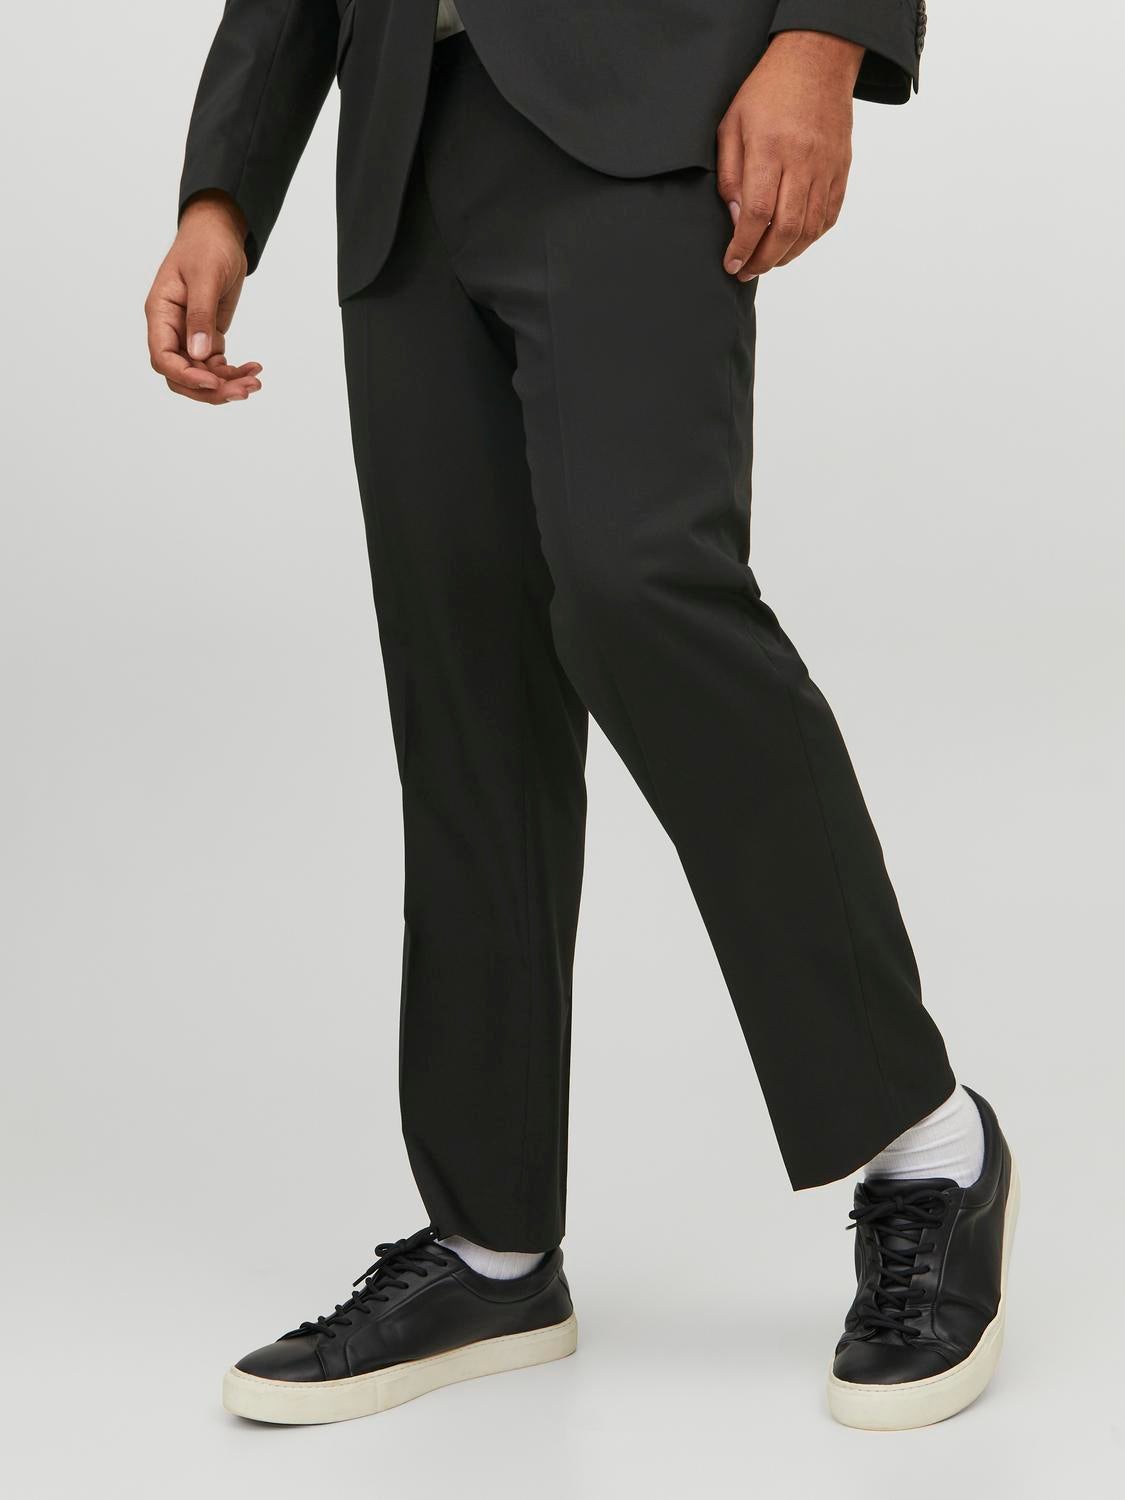 Girls Black Smart Trousers Women Tailored School Office Work Formal  Straight Fit | eBay